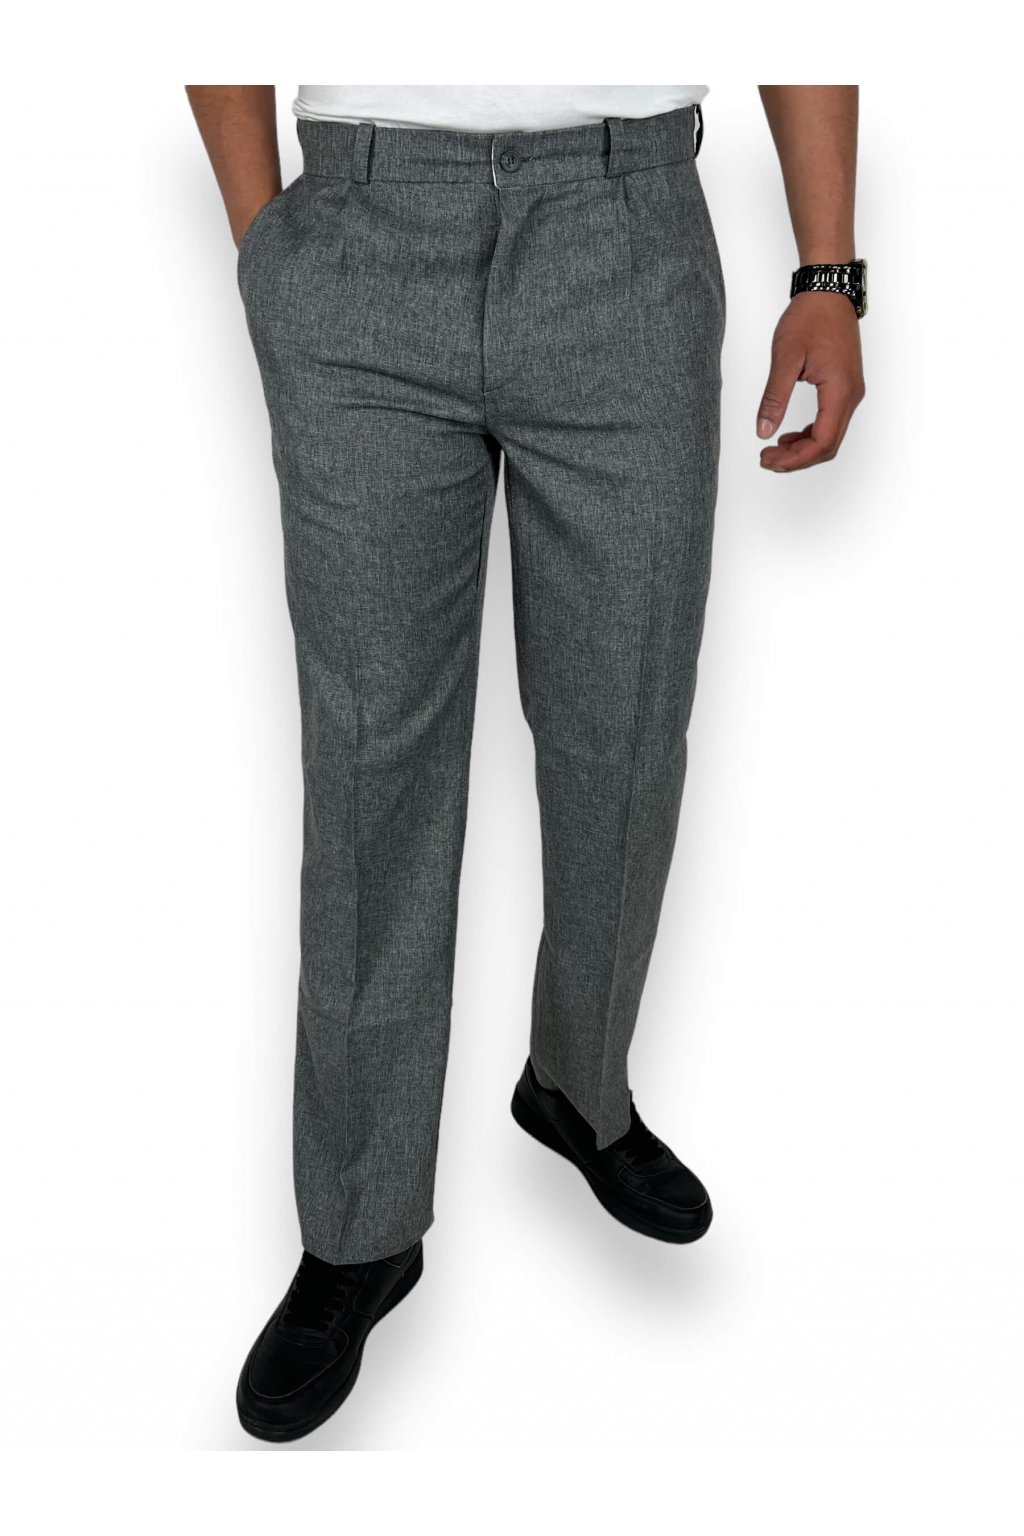 Pánské společenské kalhoty šedé barvy - Radost oblékat